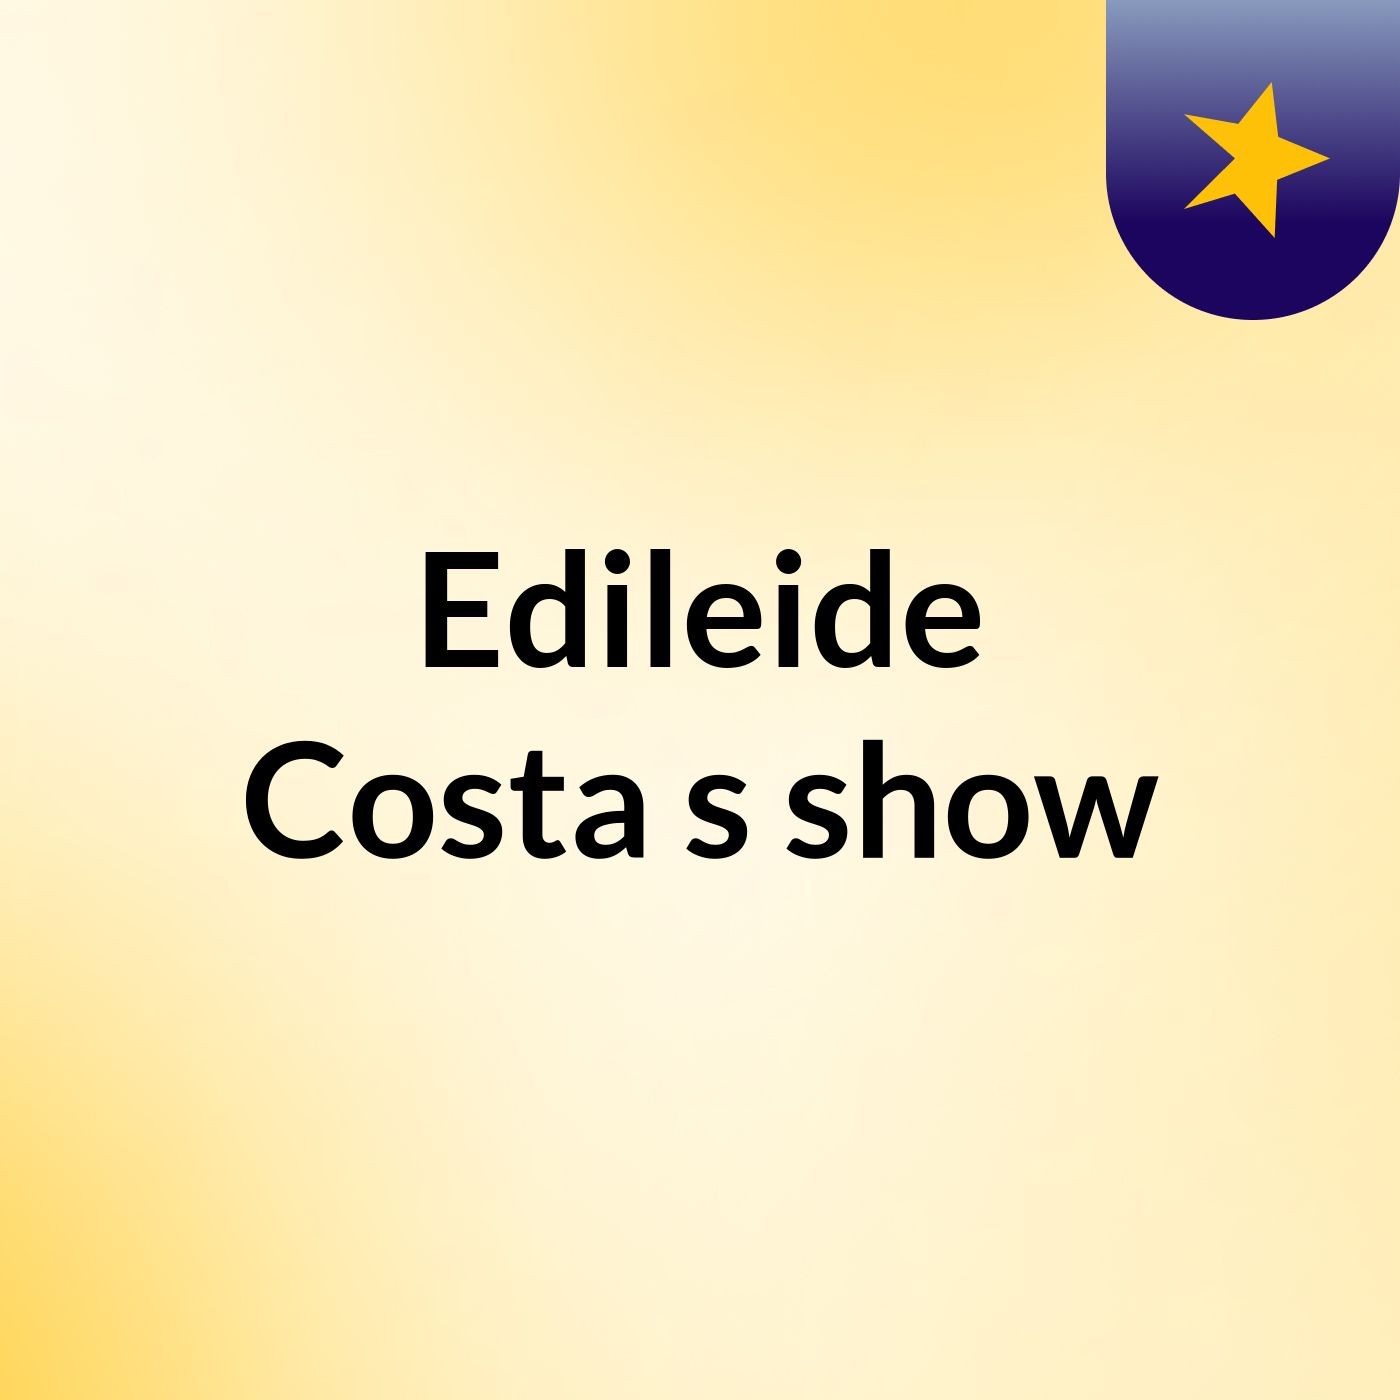 Edileide Costa's show